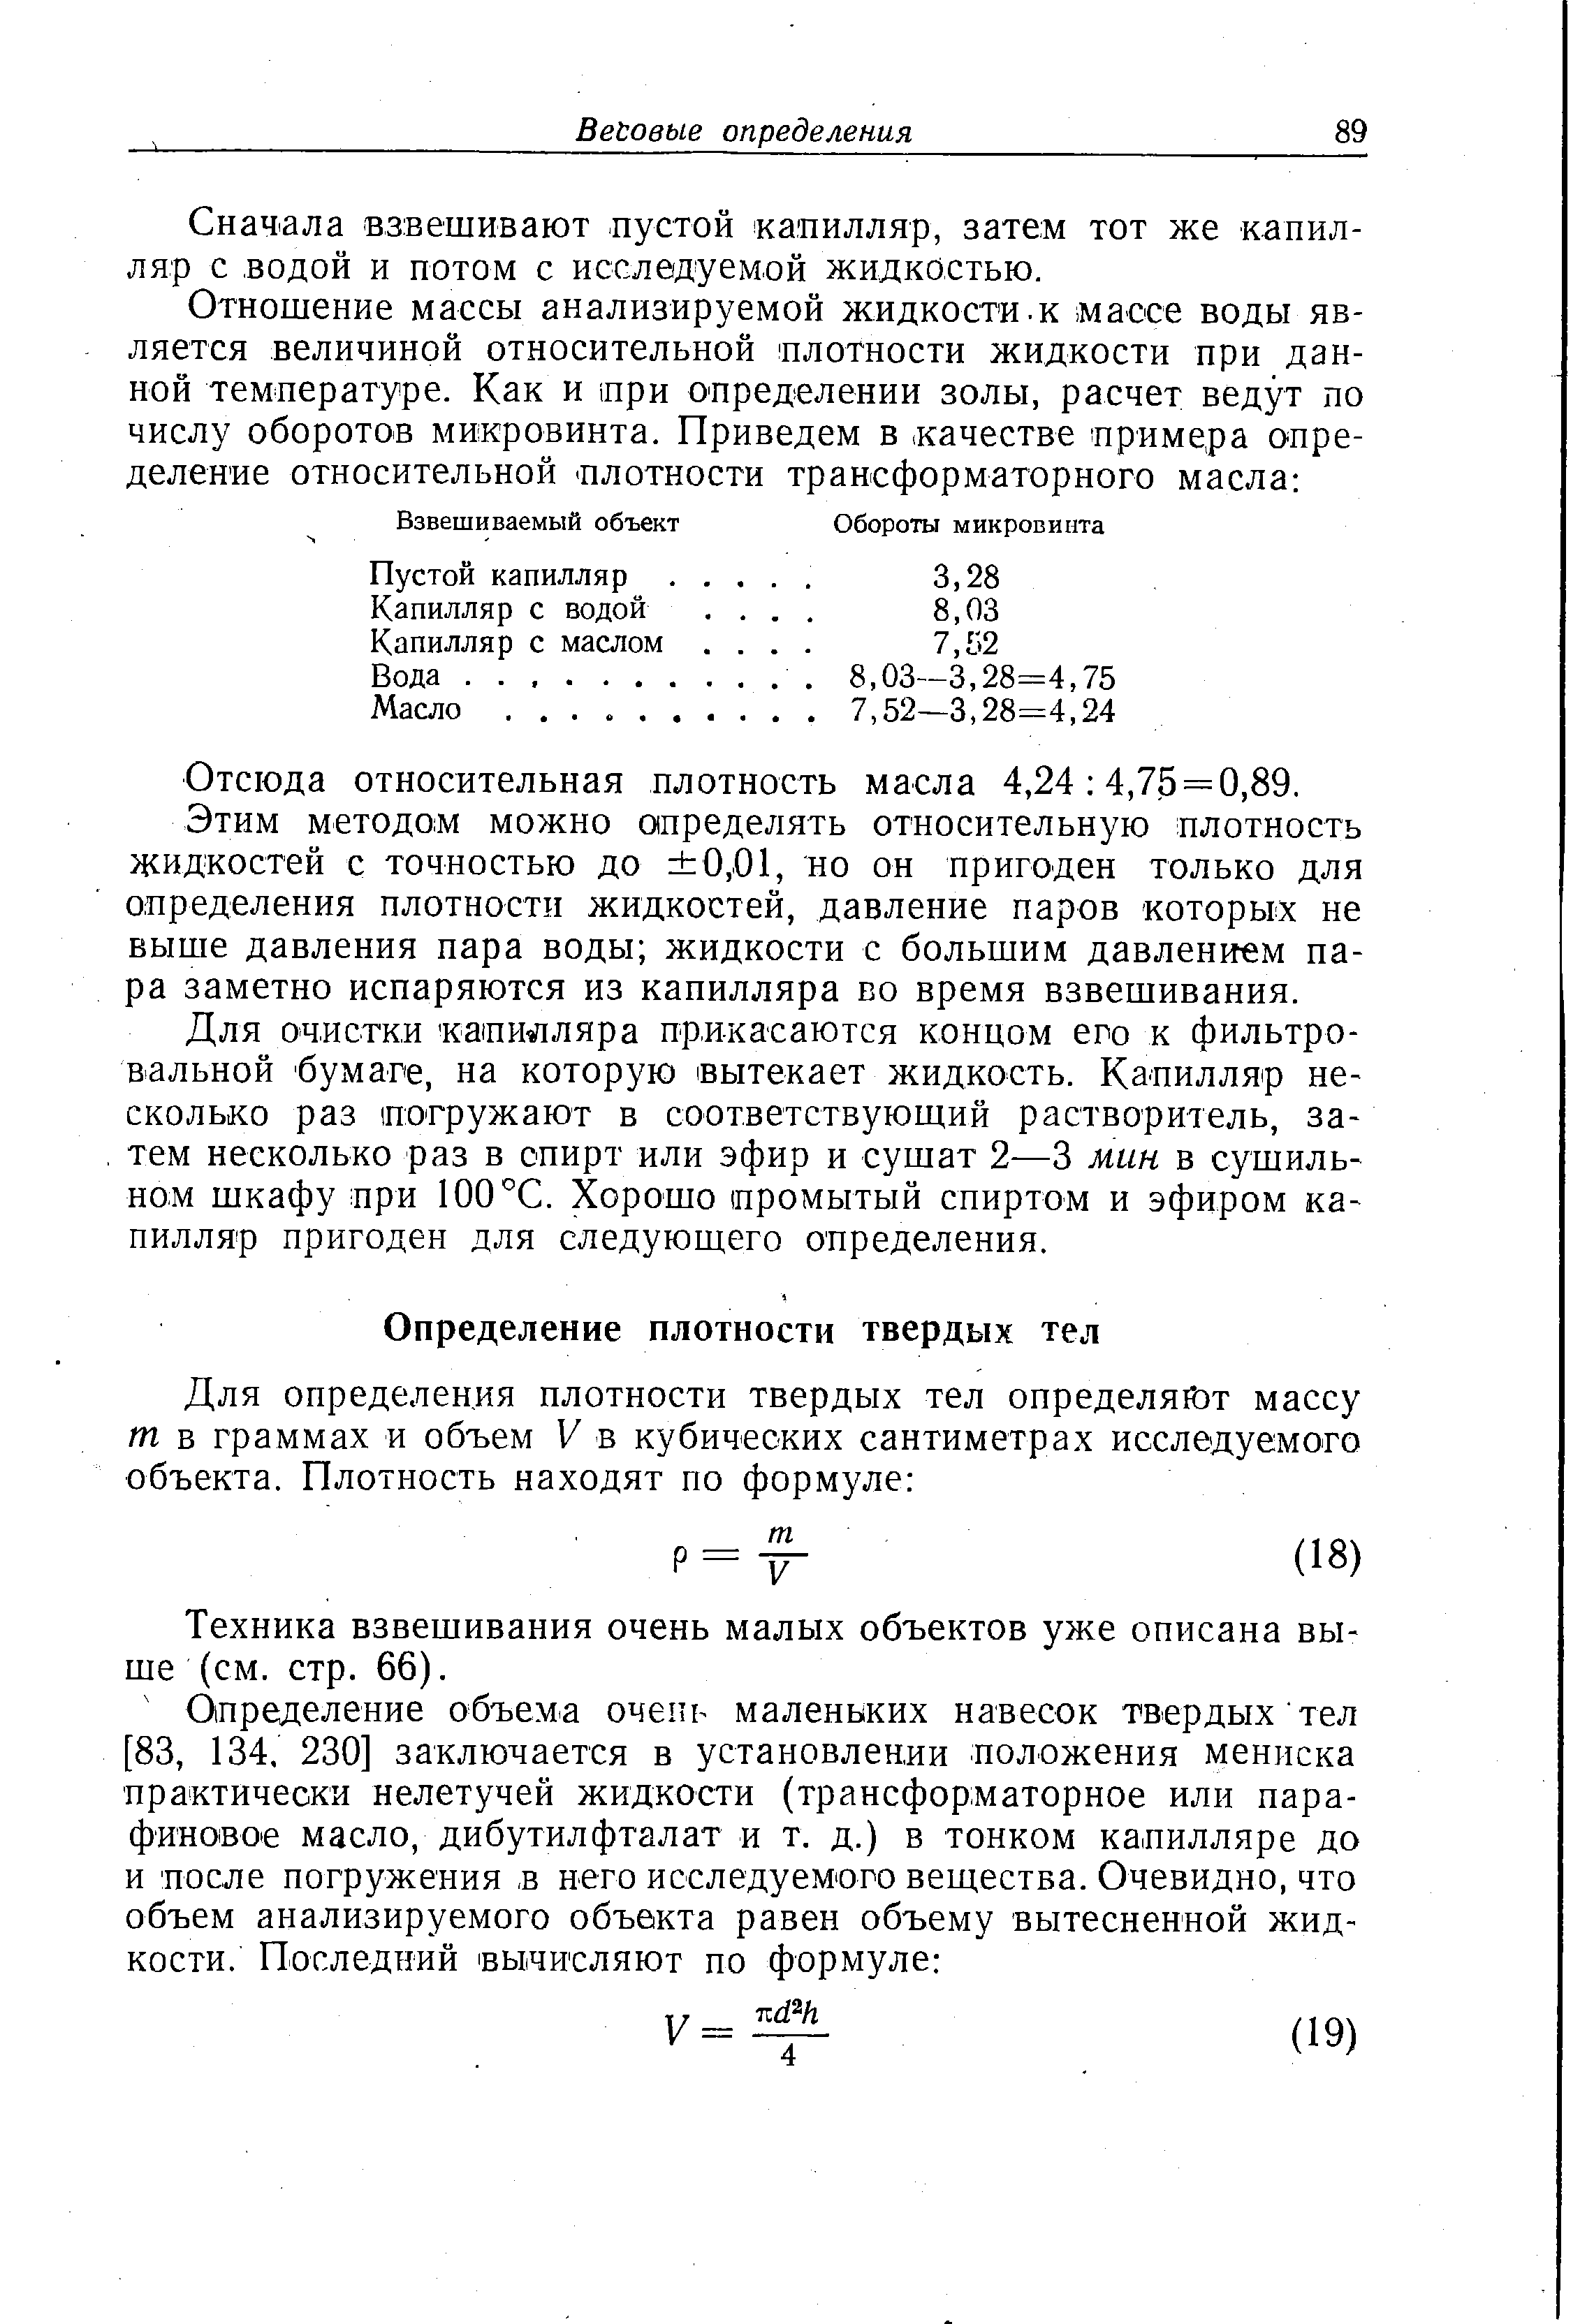 Техника взвешивания очень малых объектов уже описана выше (см. стр. 66).